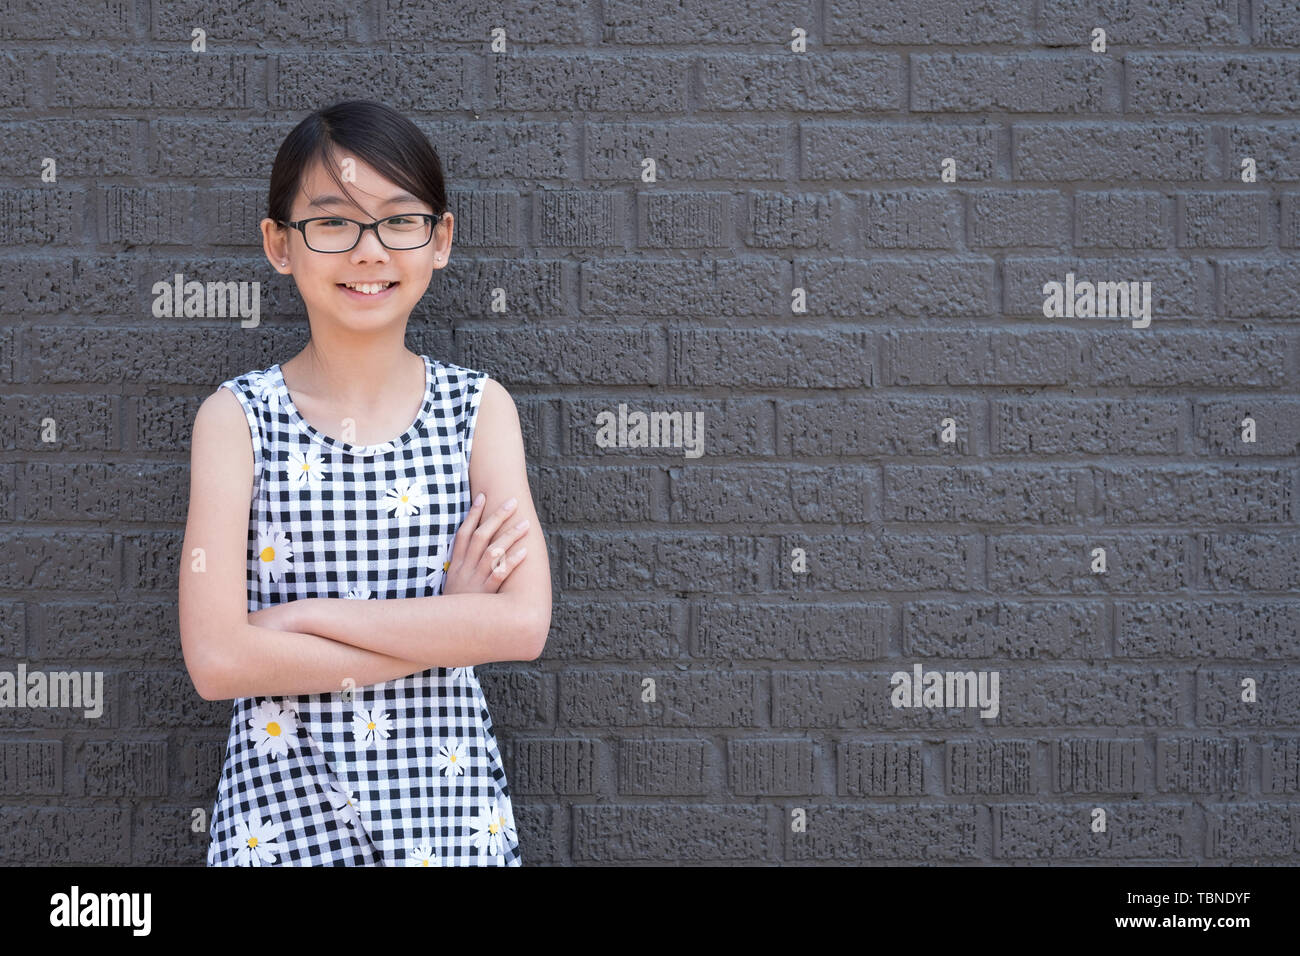 Portrait de jeune fille asiatique contre le mur de brique noire Banque D'Images